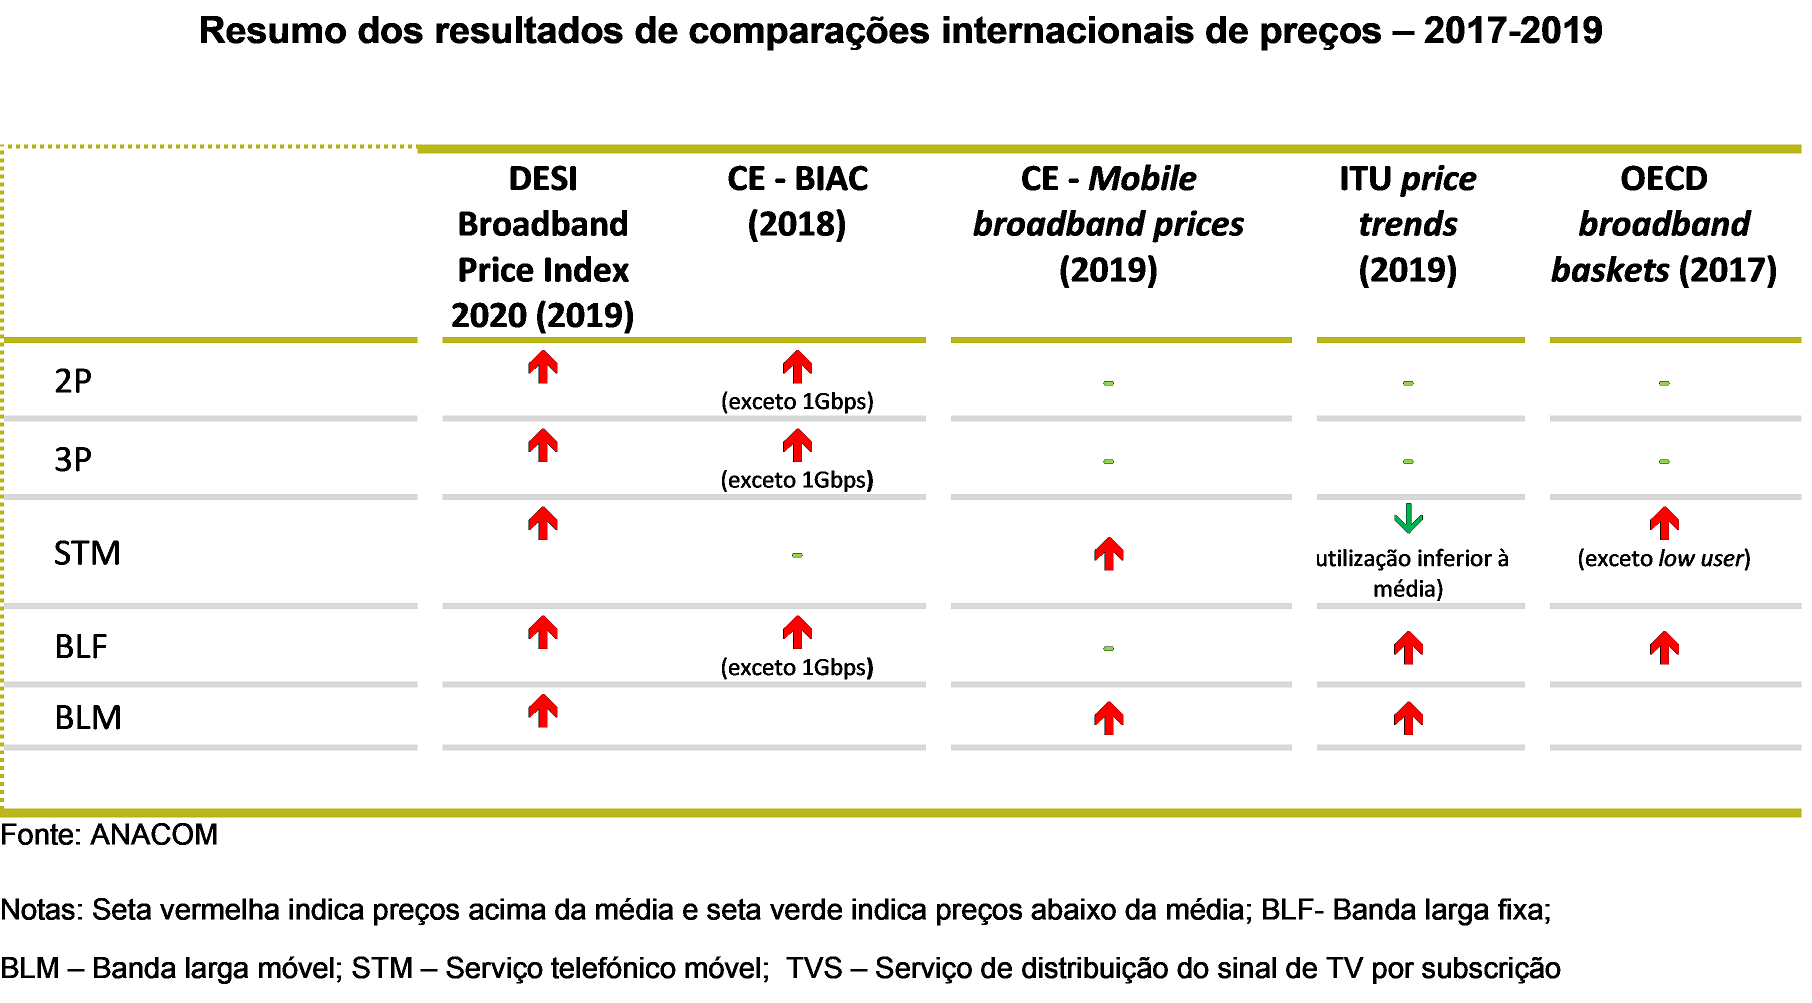 Resumo dos resultados de comparações internacionais de preços - 2017-2019.